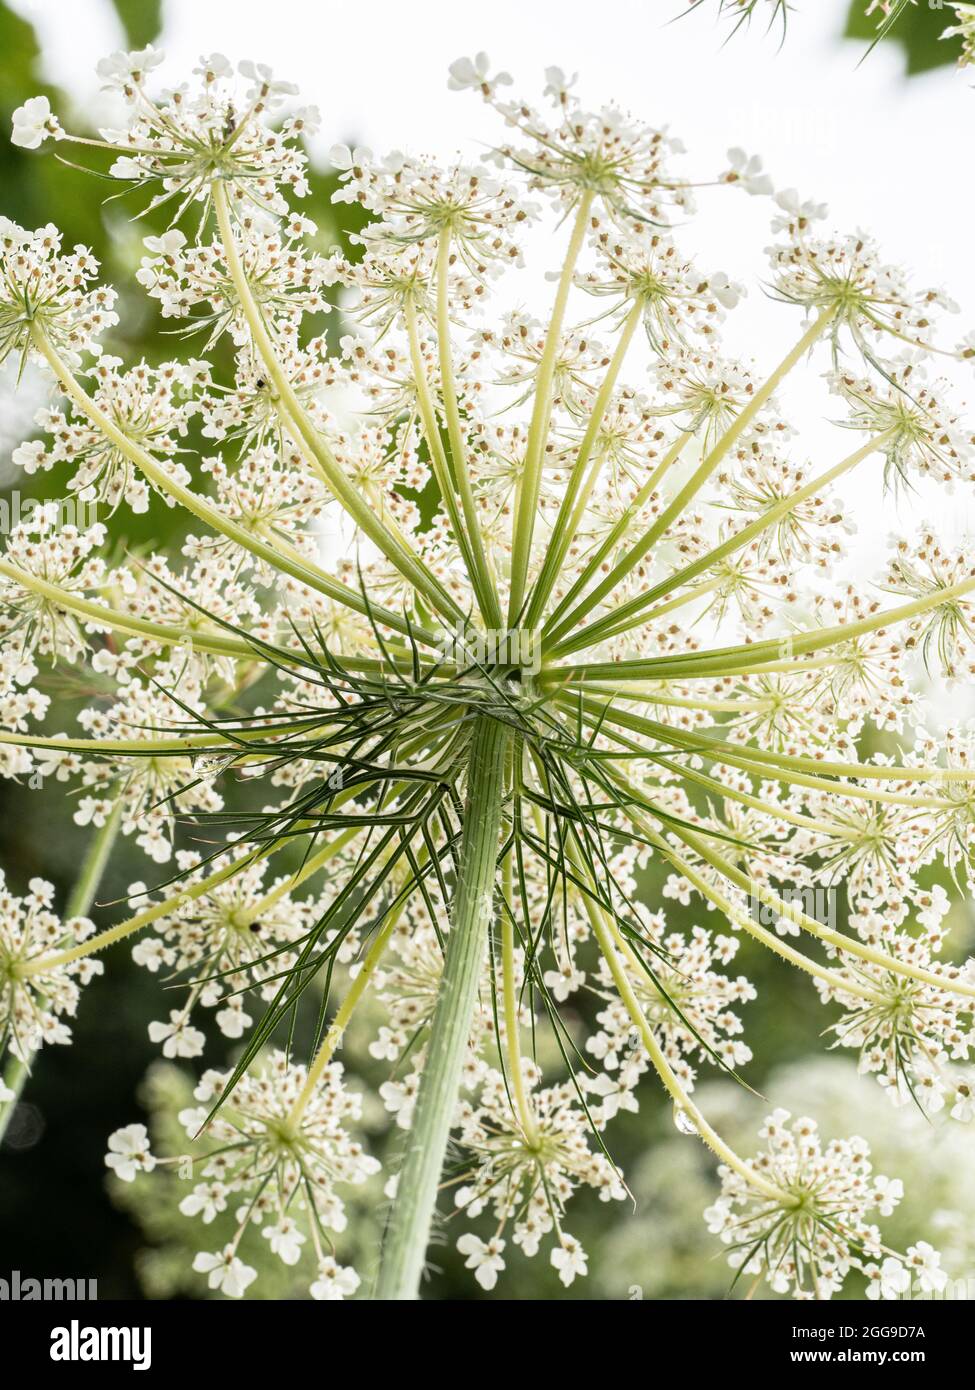 Un gros plan de la face inférieure d'une fleur de carotte sauvage contre la lumière montrant la dentelle délicate comme le motif des fleurs Banque D'Images